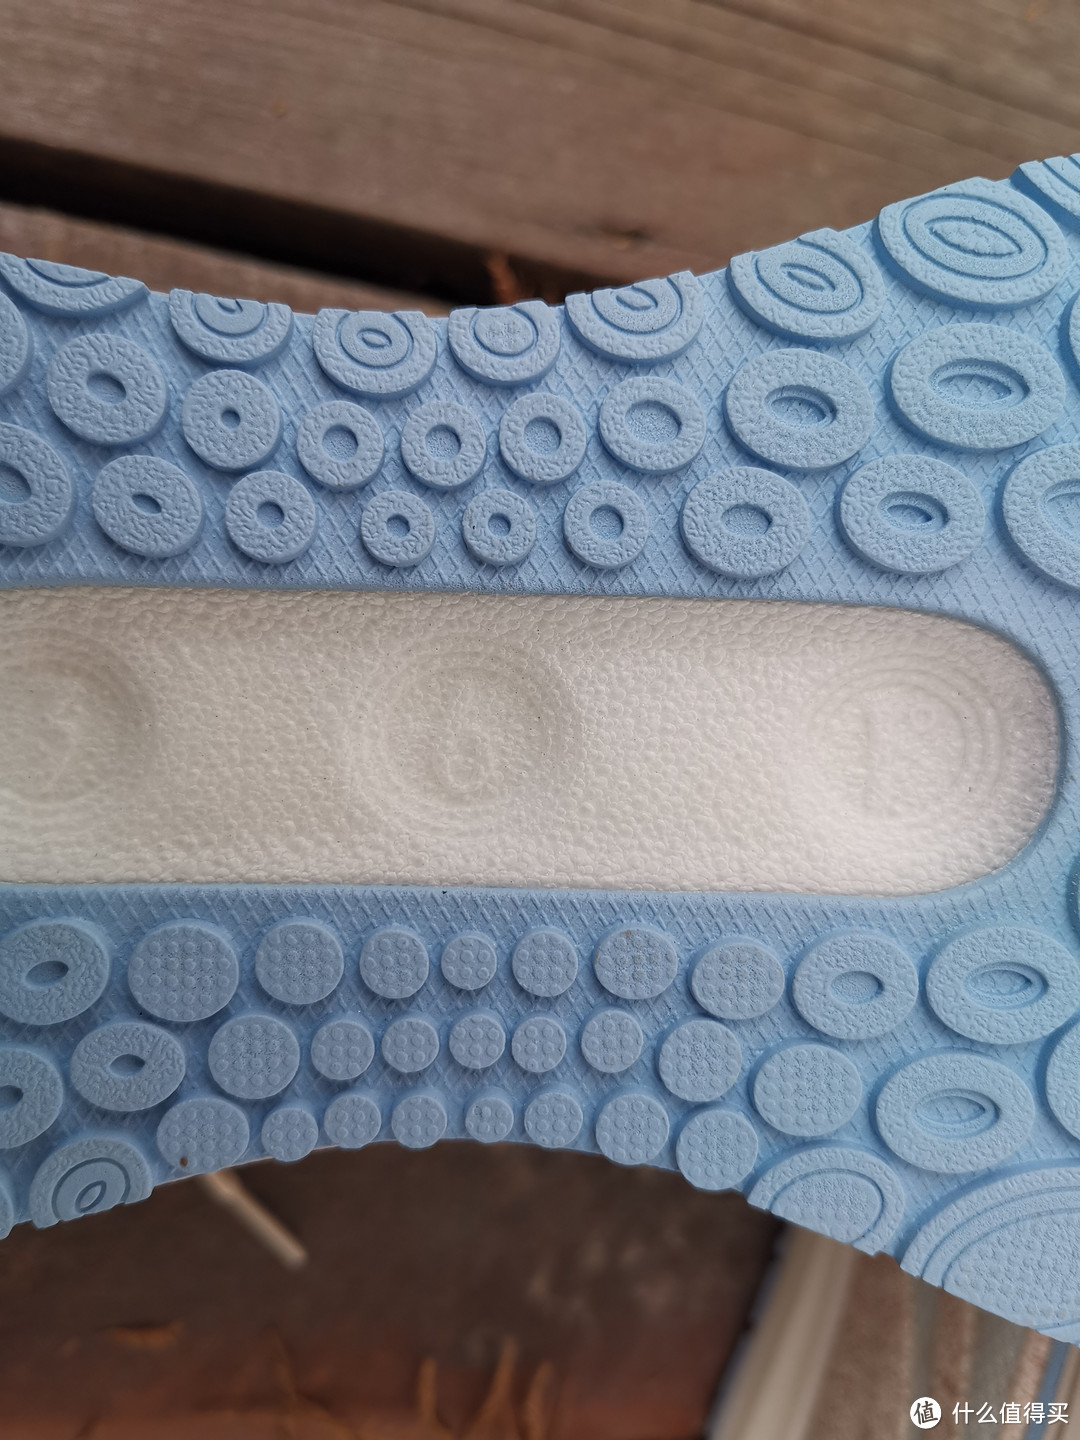 在跑鞋的中间位置，则是一块镂空设计，白色的中底上面浮雕出“361°”的品牌LOGO。